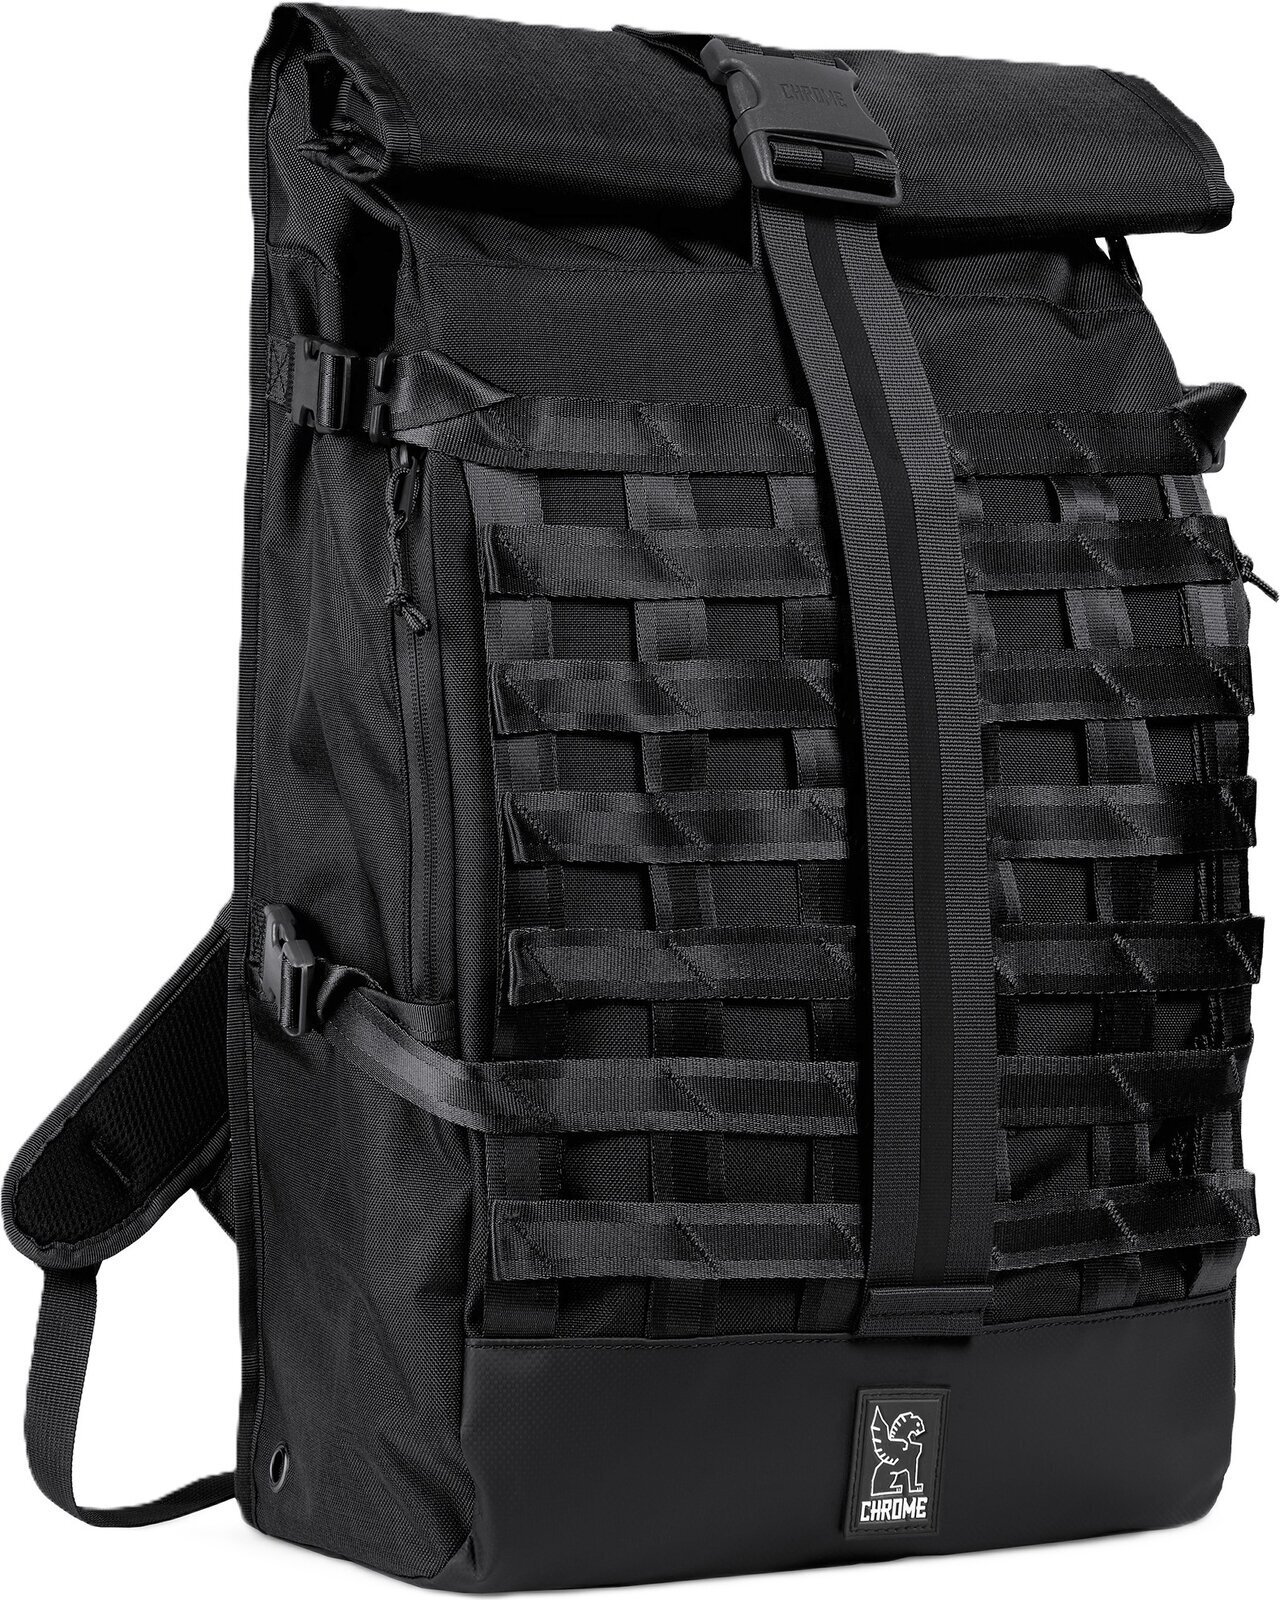 Lifestyle Backpack / Bag Chrome Barrage Backpack Black 34 L Backpack